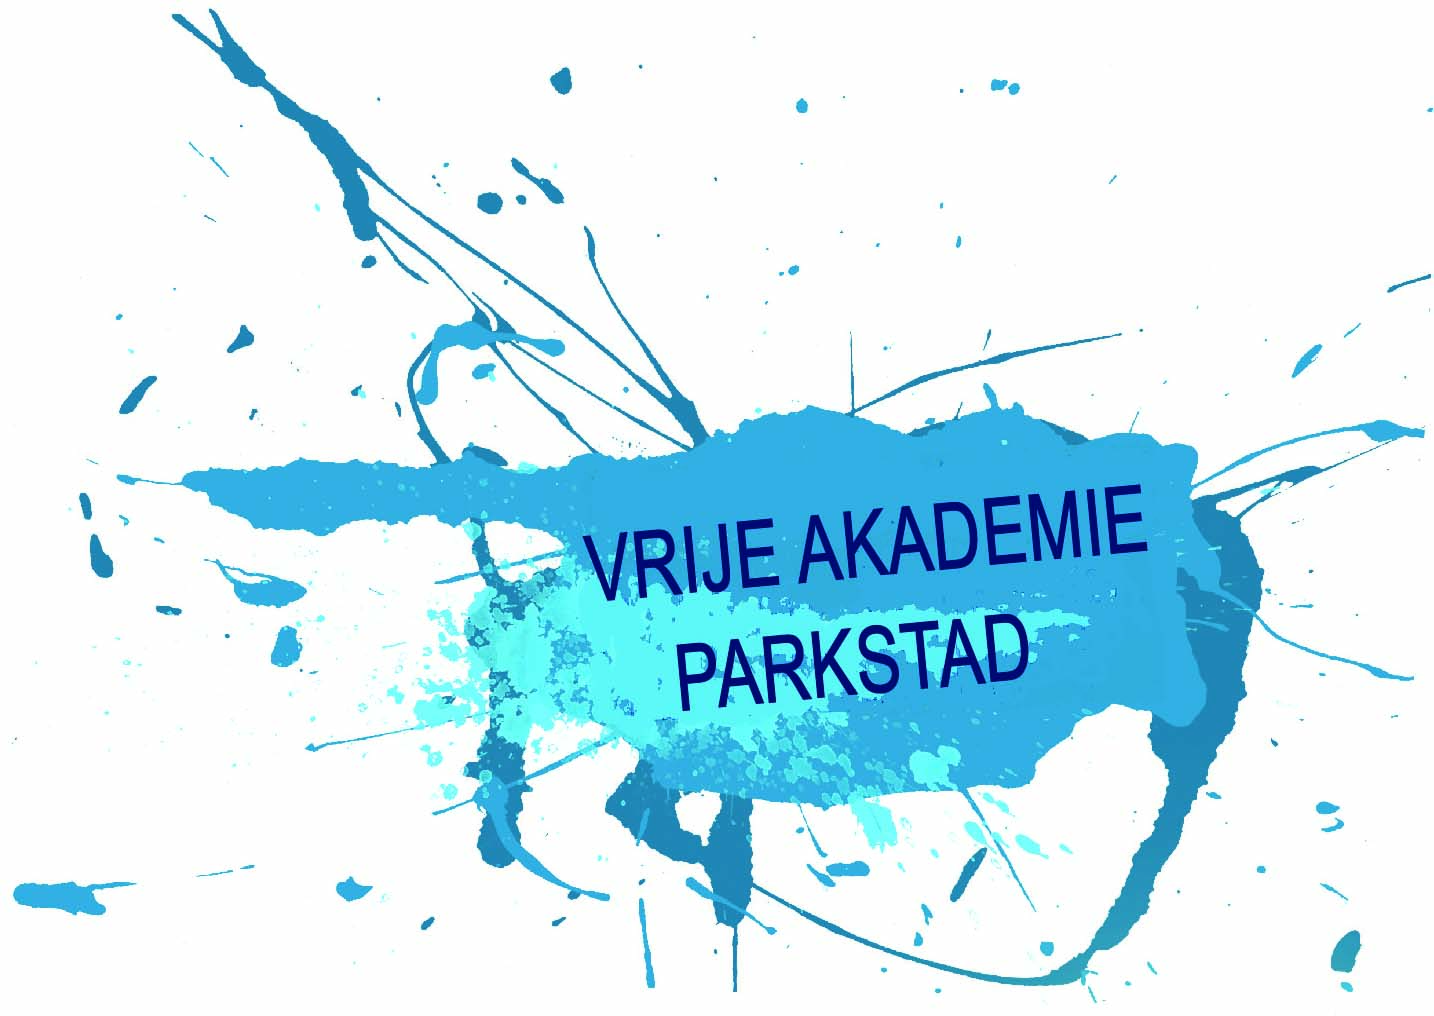 Vrije Akademie Parkstad logo